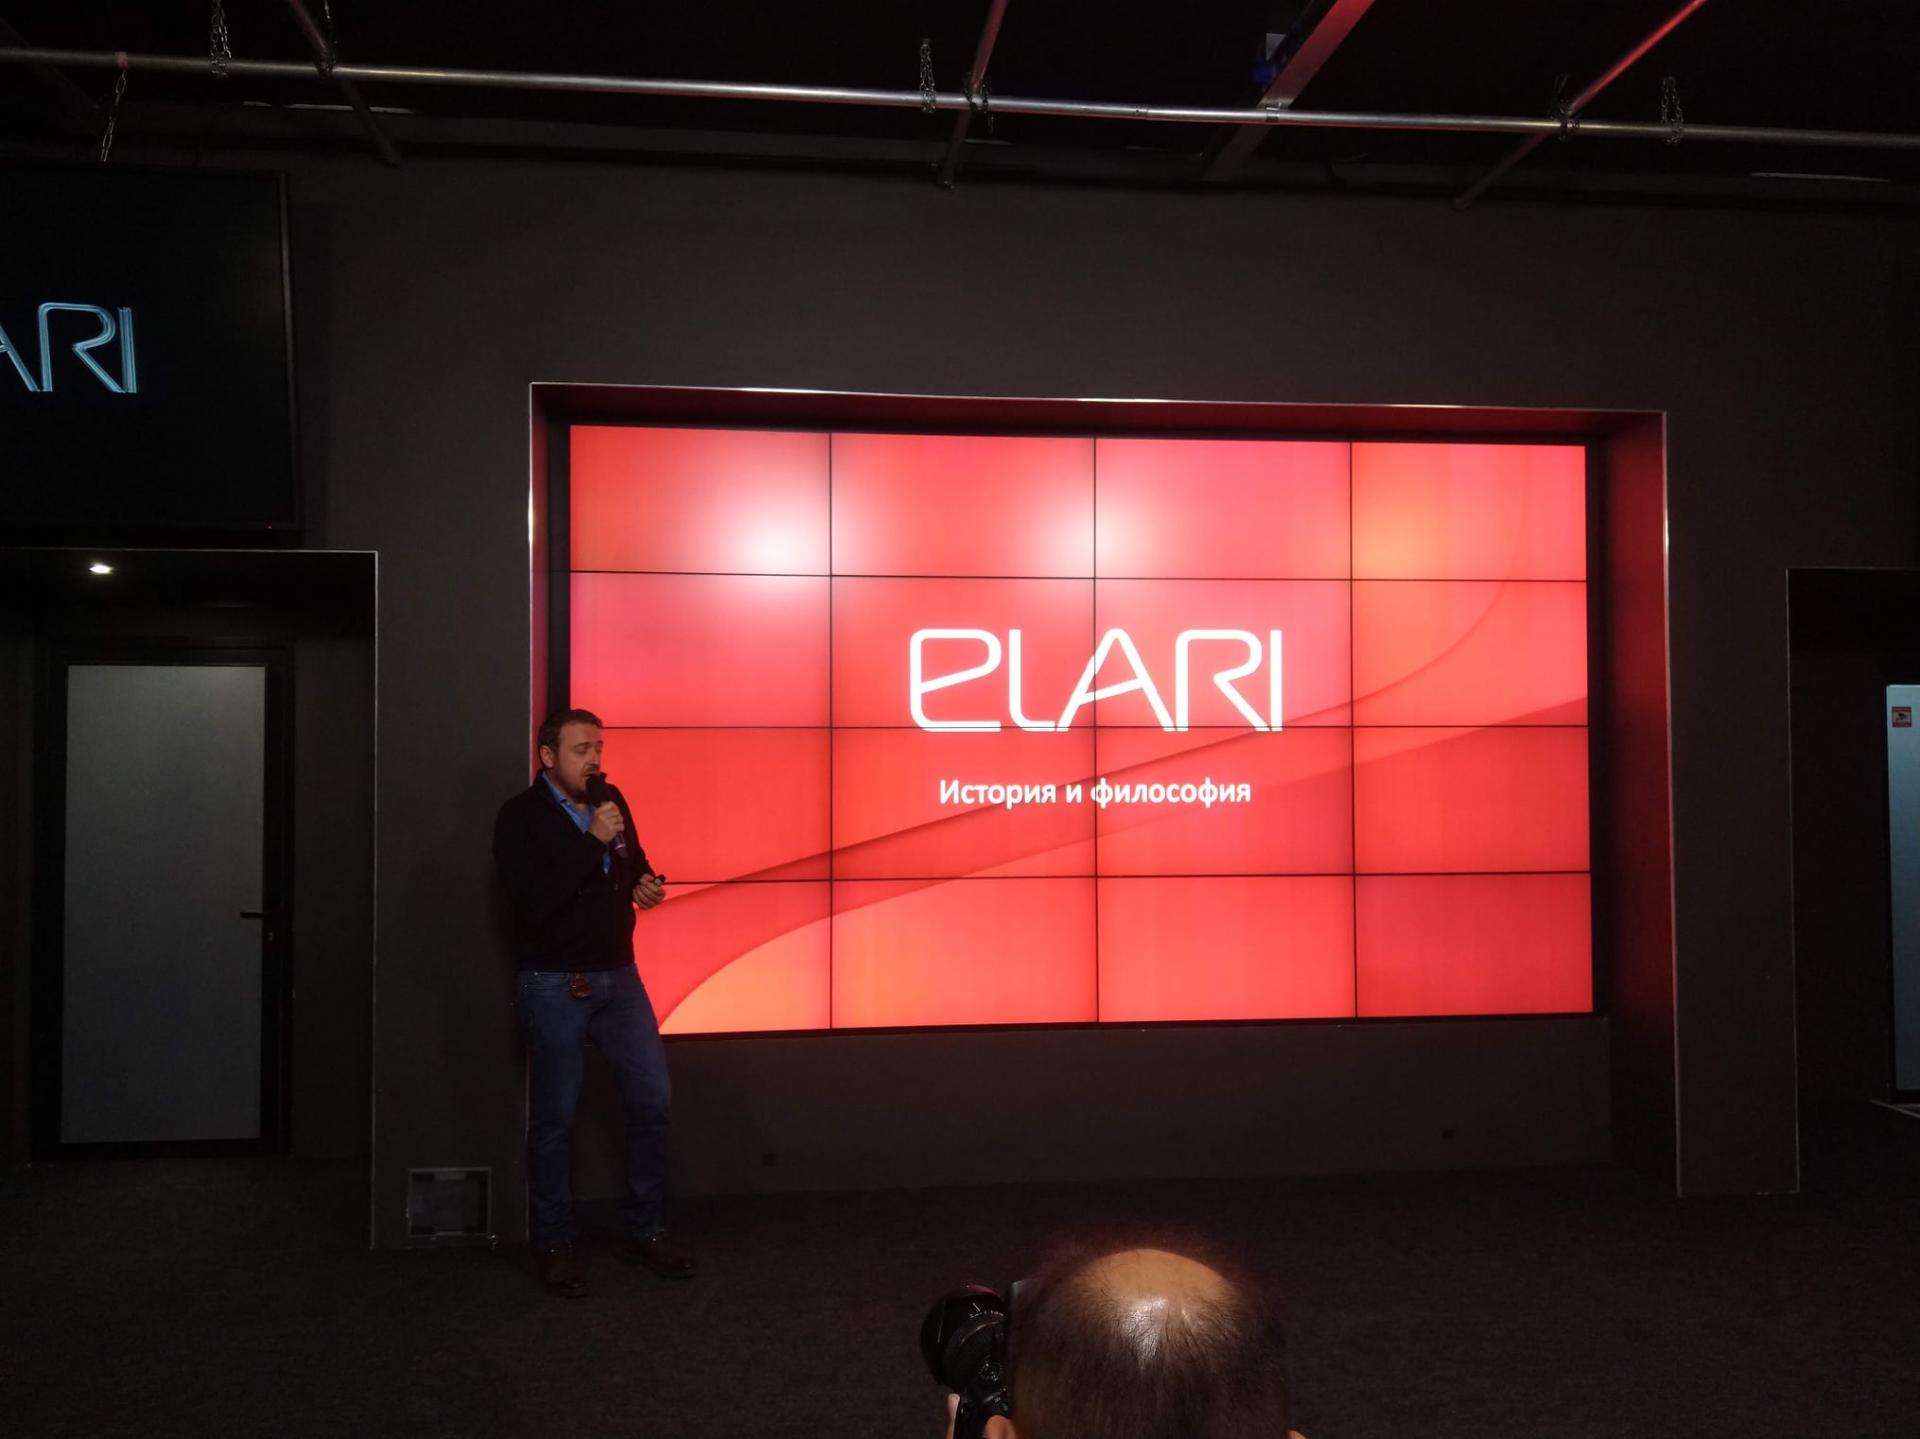 Много новых продуктов от Elari: акцент в сторону умного дома и не только